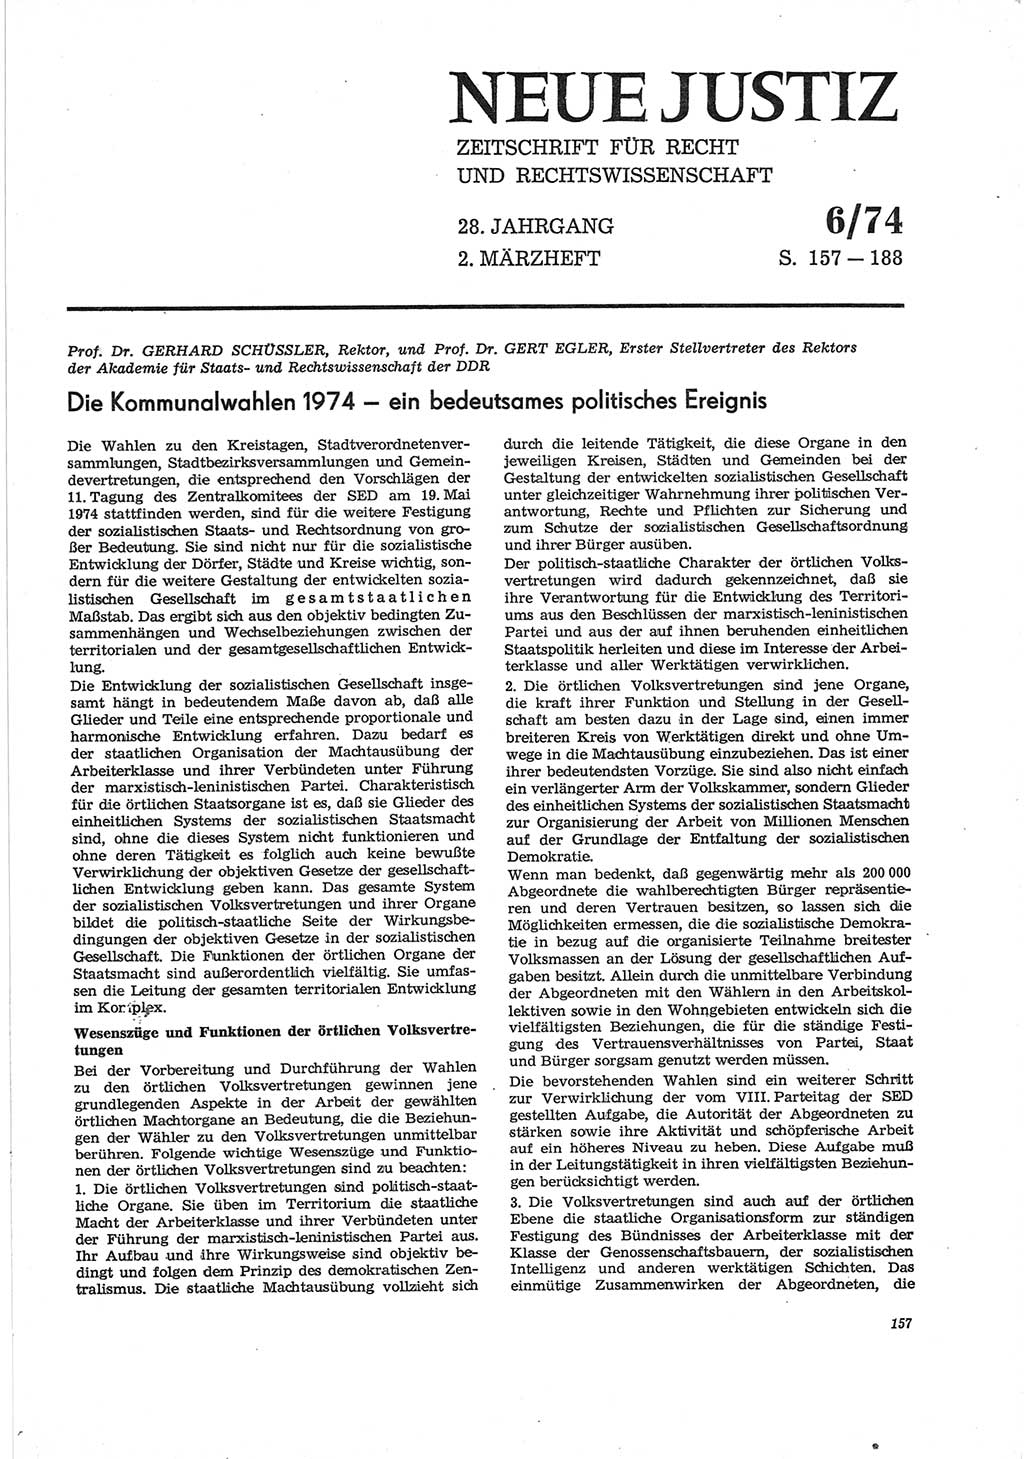 Neue Justiz (NJ), Zeitschrift für Recht und Rechtswissenschaft [Deutsche Demokratische Republik (DDR)], 28. Jahrgang 1974, Seite 157 (NJ DDR 1974, S. 157)